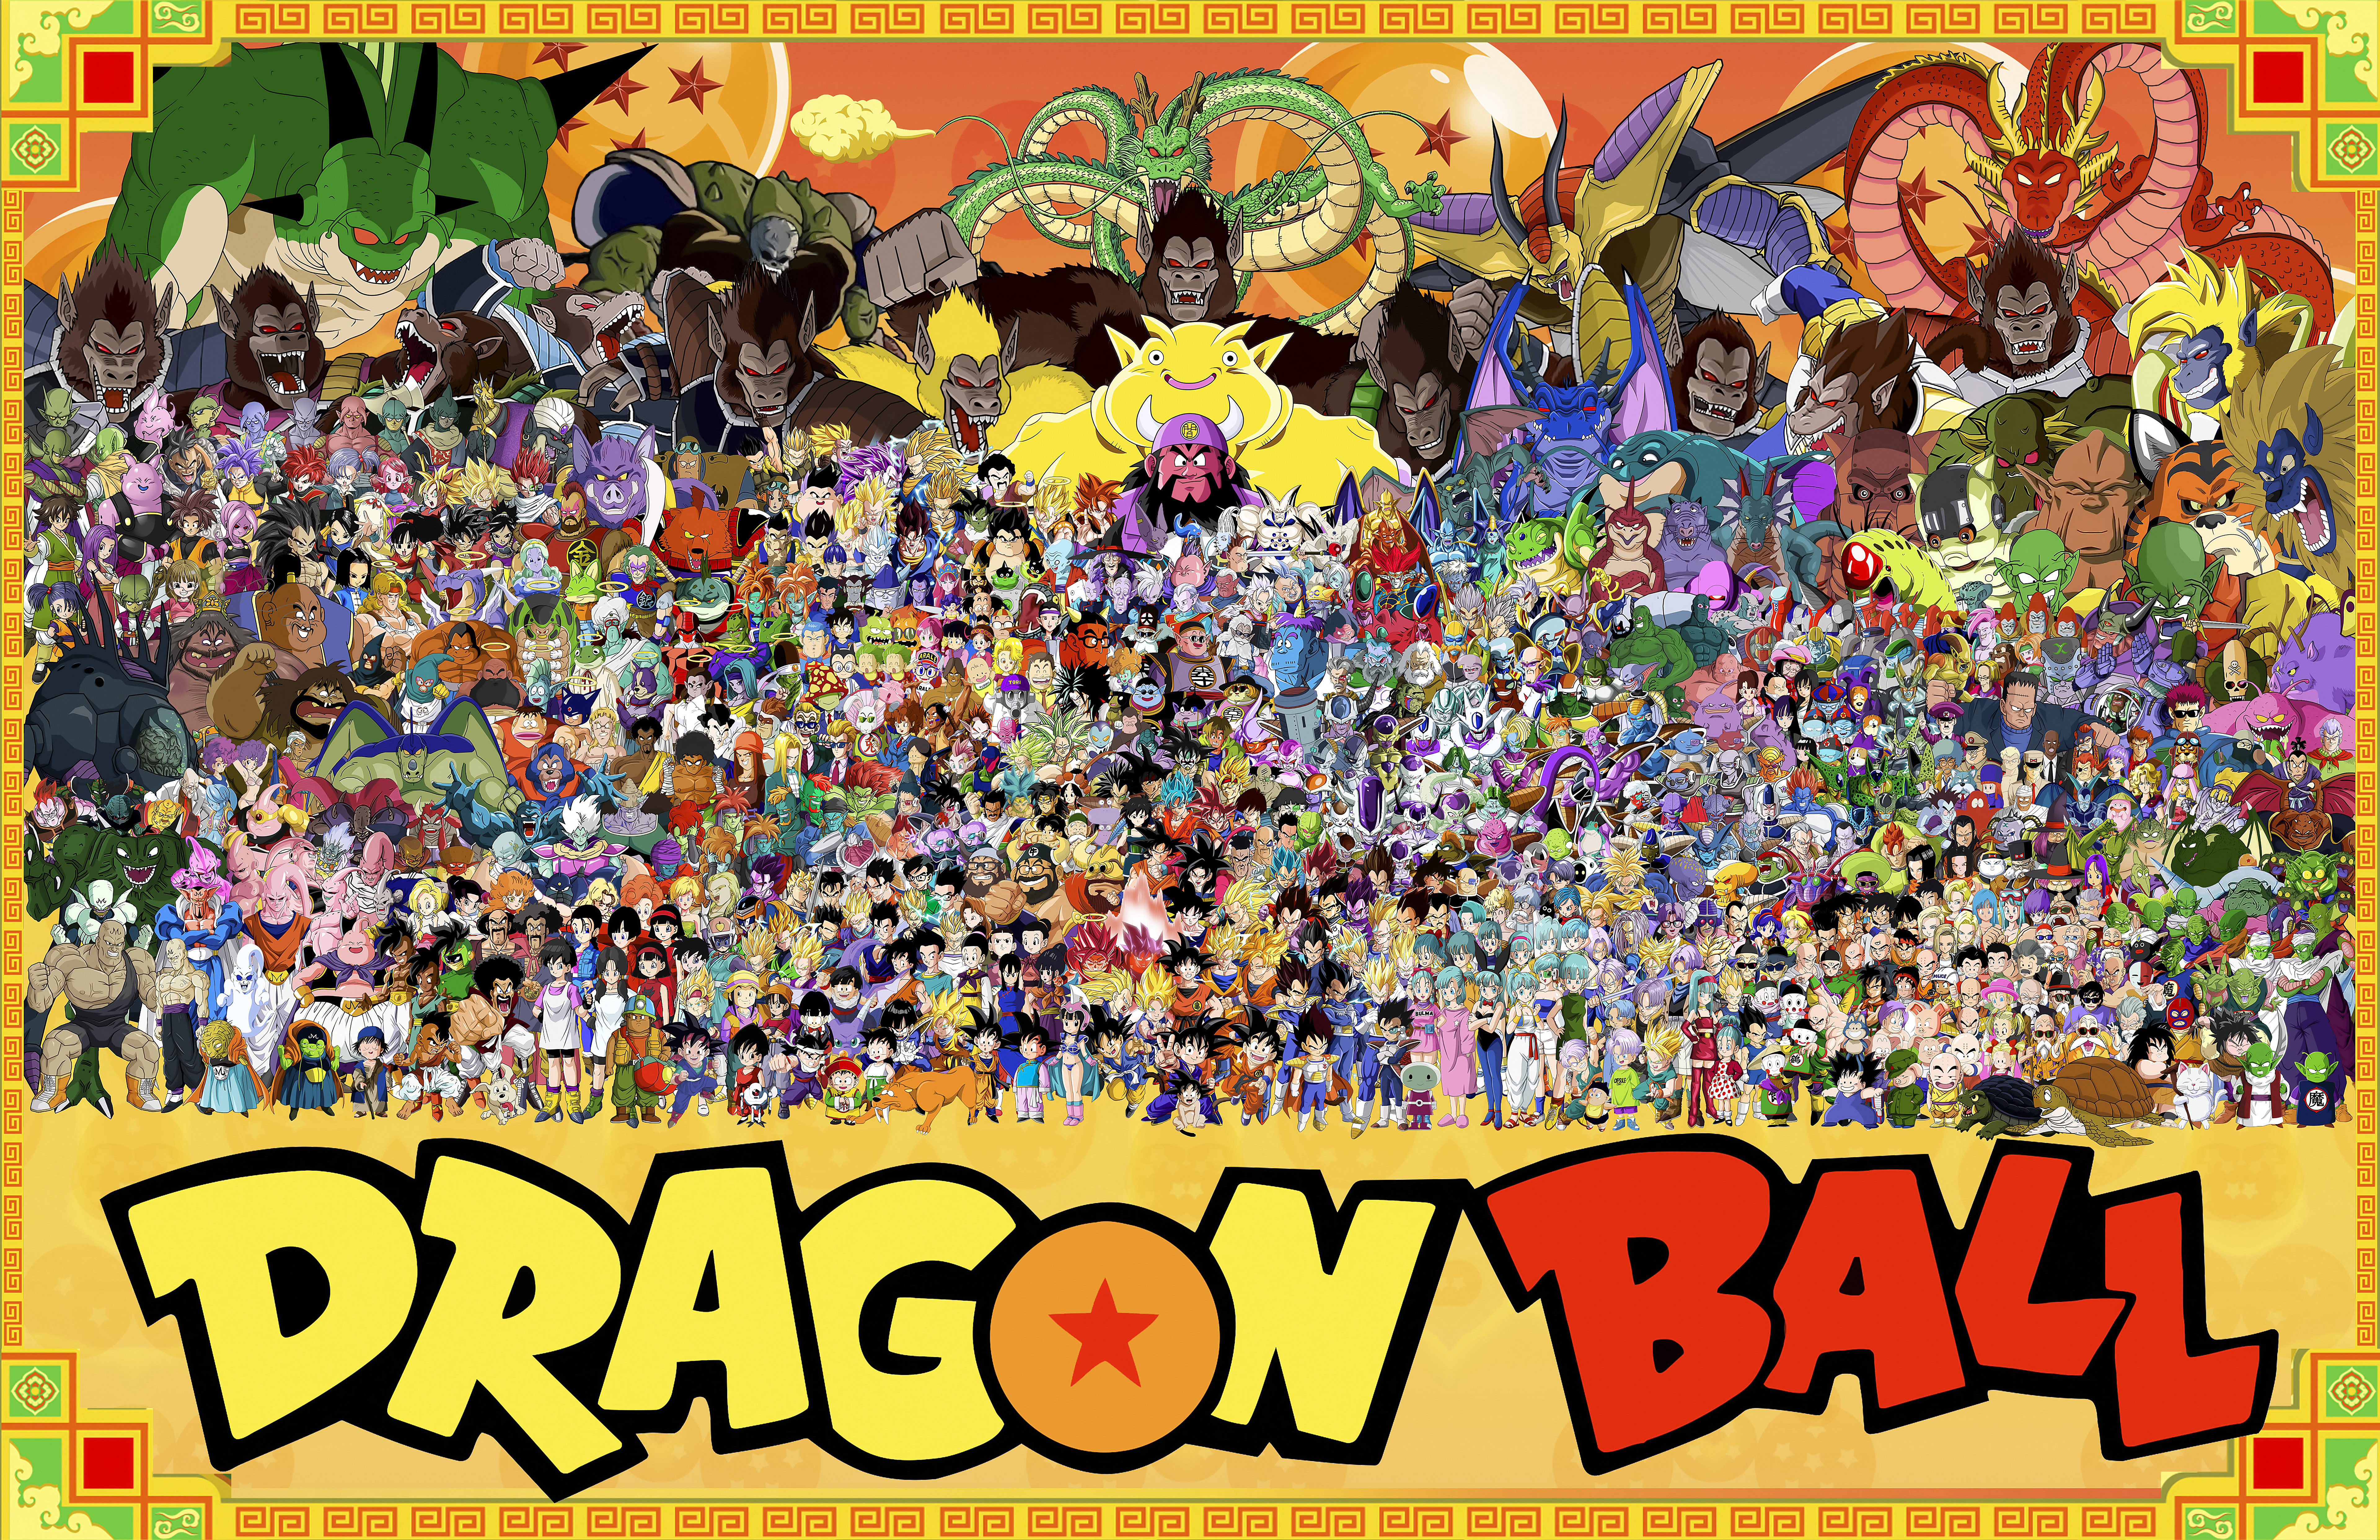 Dragon Ball Dragon Ball FighterZ Dragon Ball GT Anime Anime Boys Anime Girls Dragon Ball Z Dragon Ba 7680x4969